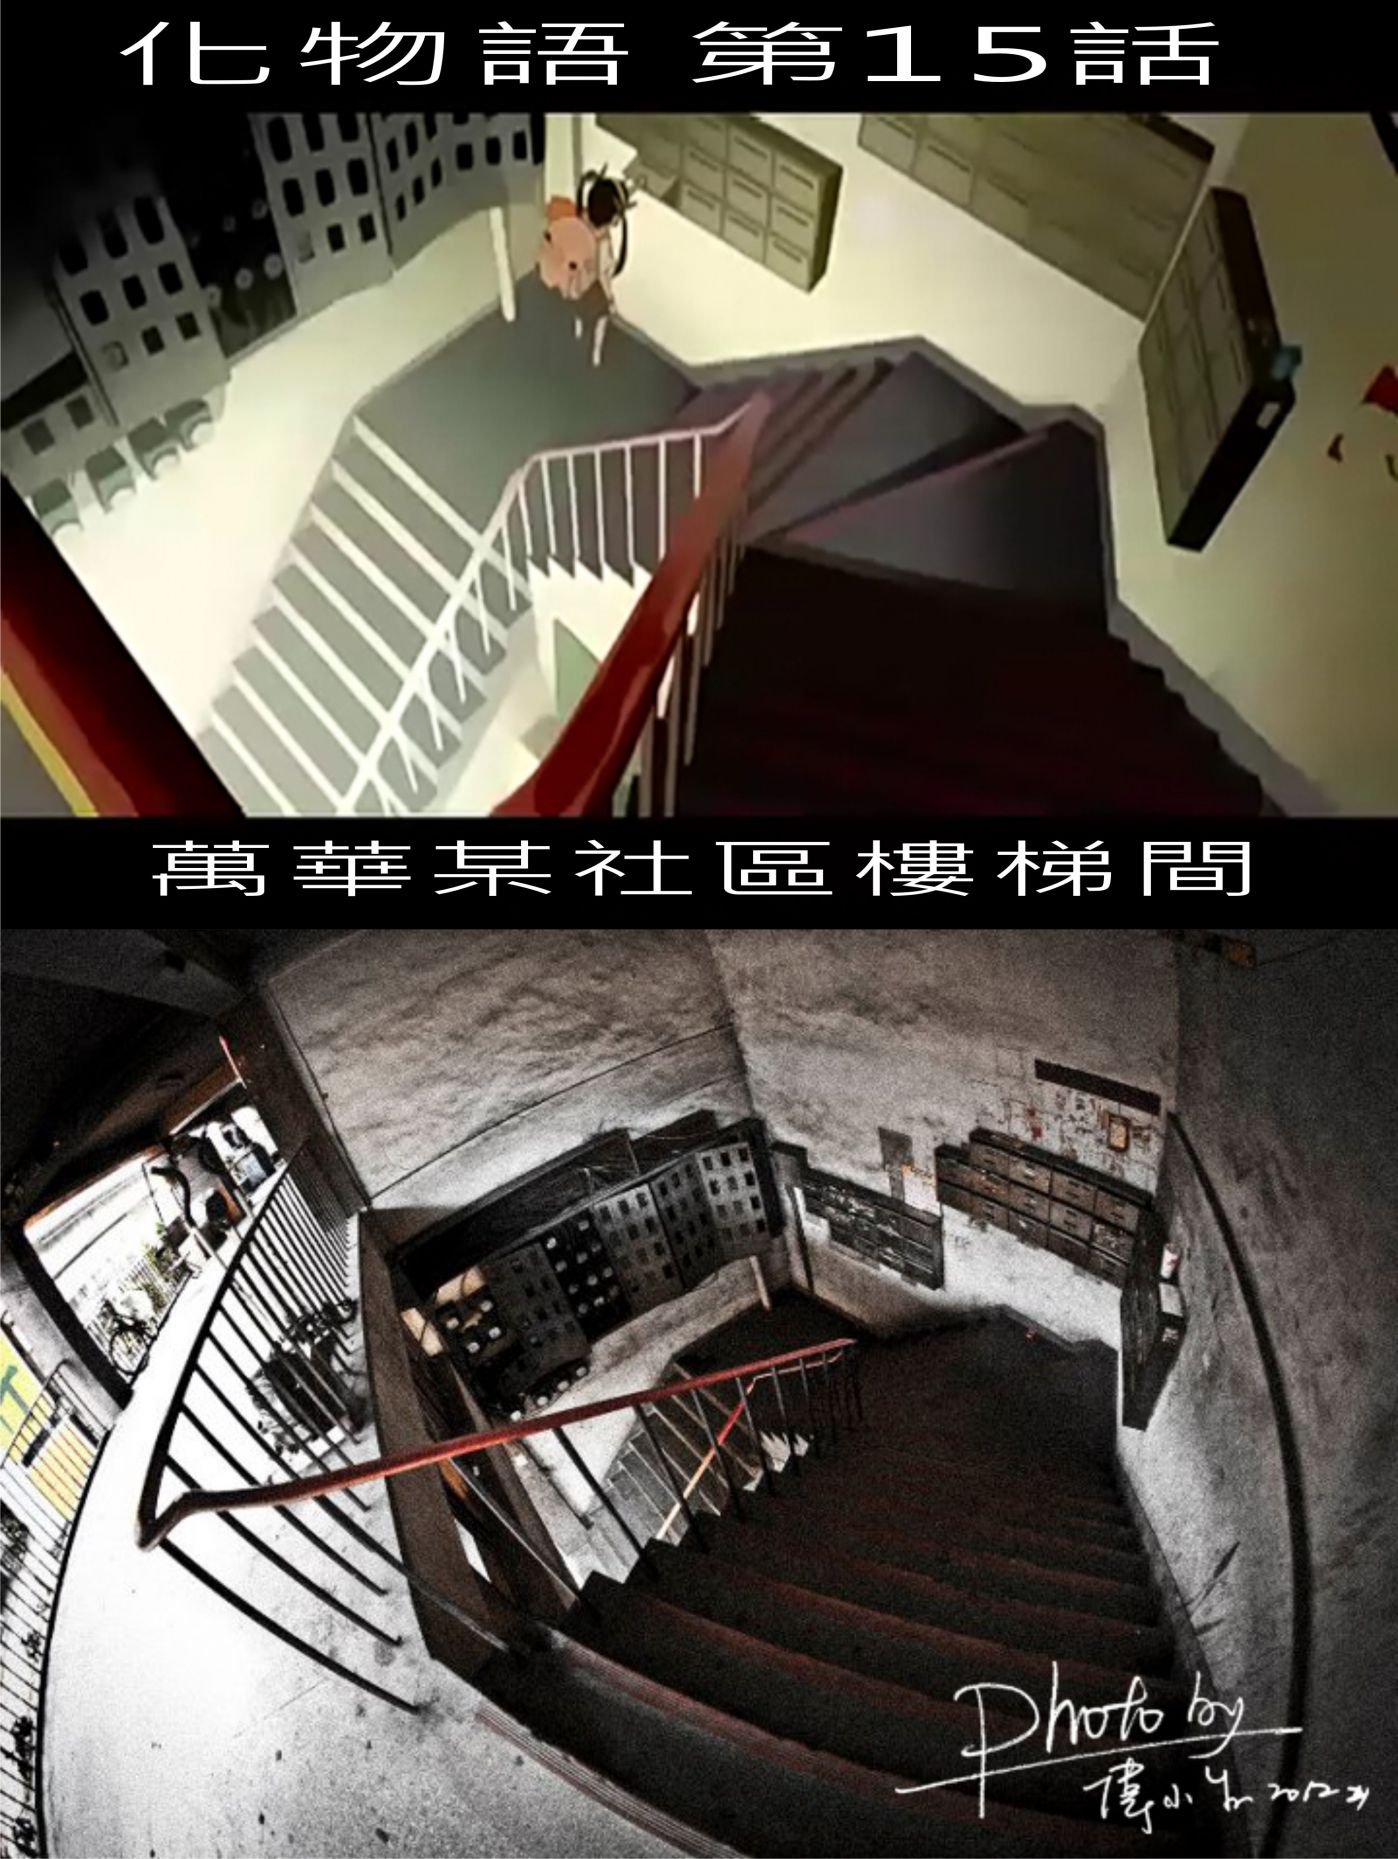 Re 心得 化物語 第15集某段場景是取自臺北萬華的街景 西尾維新作品系列哈啦板 巴哈姆特